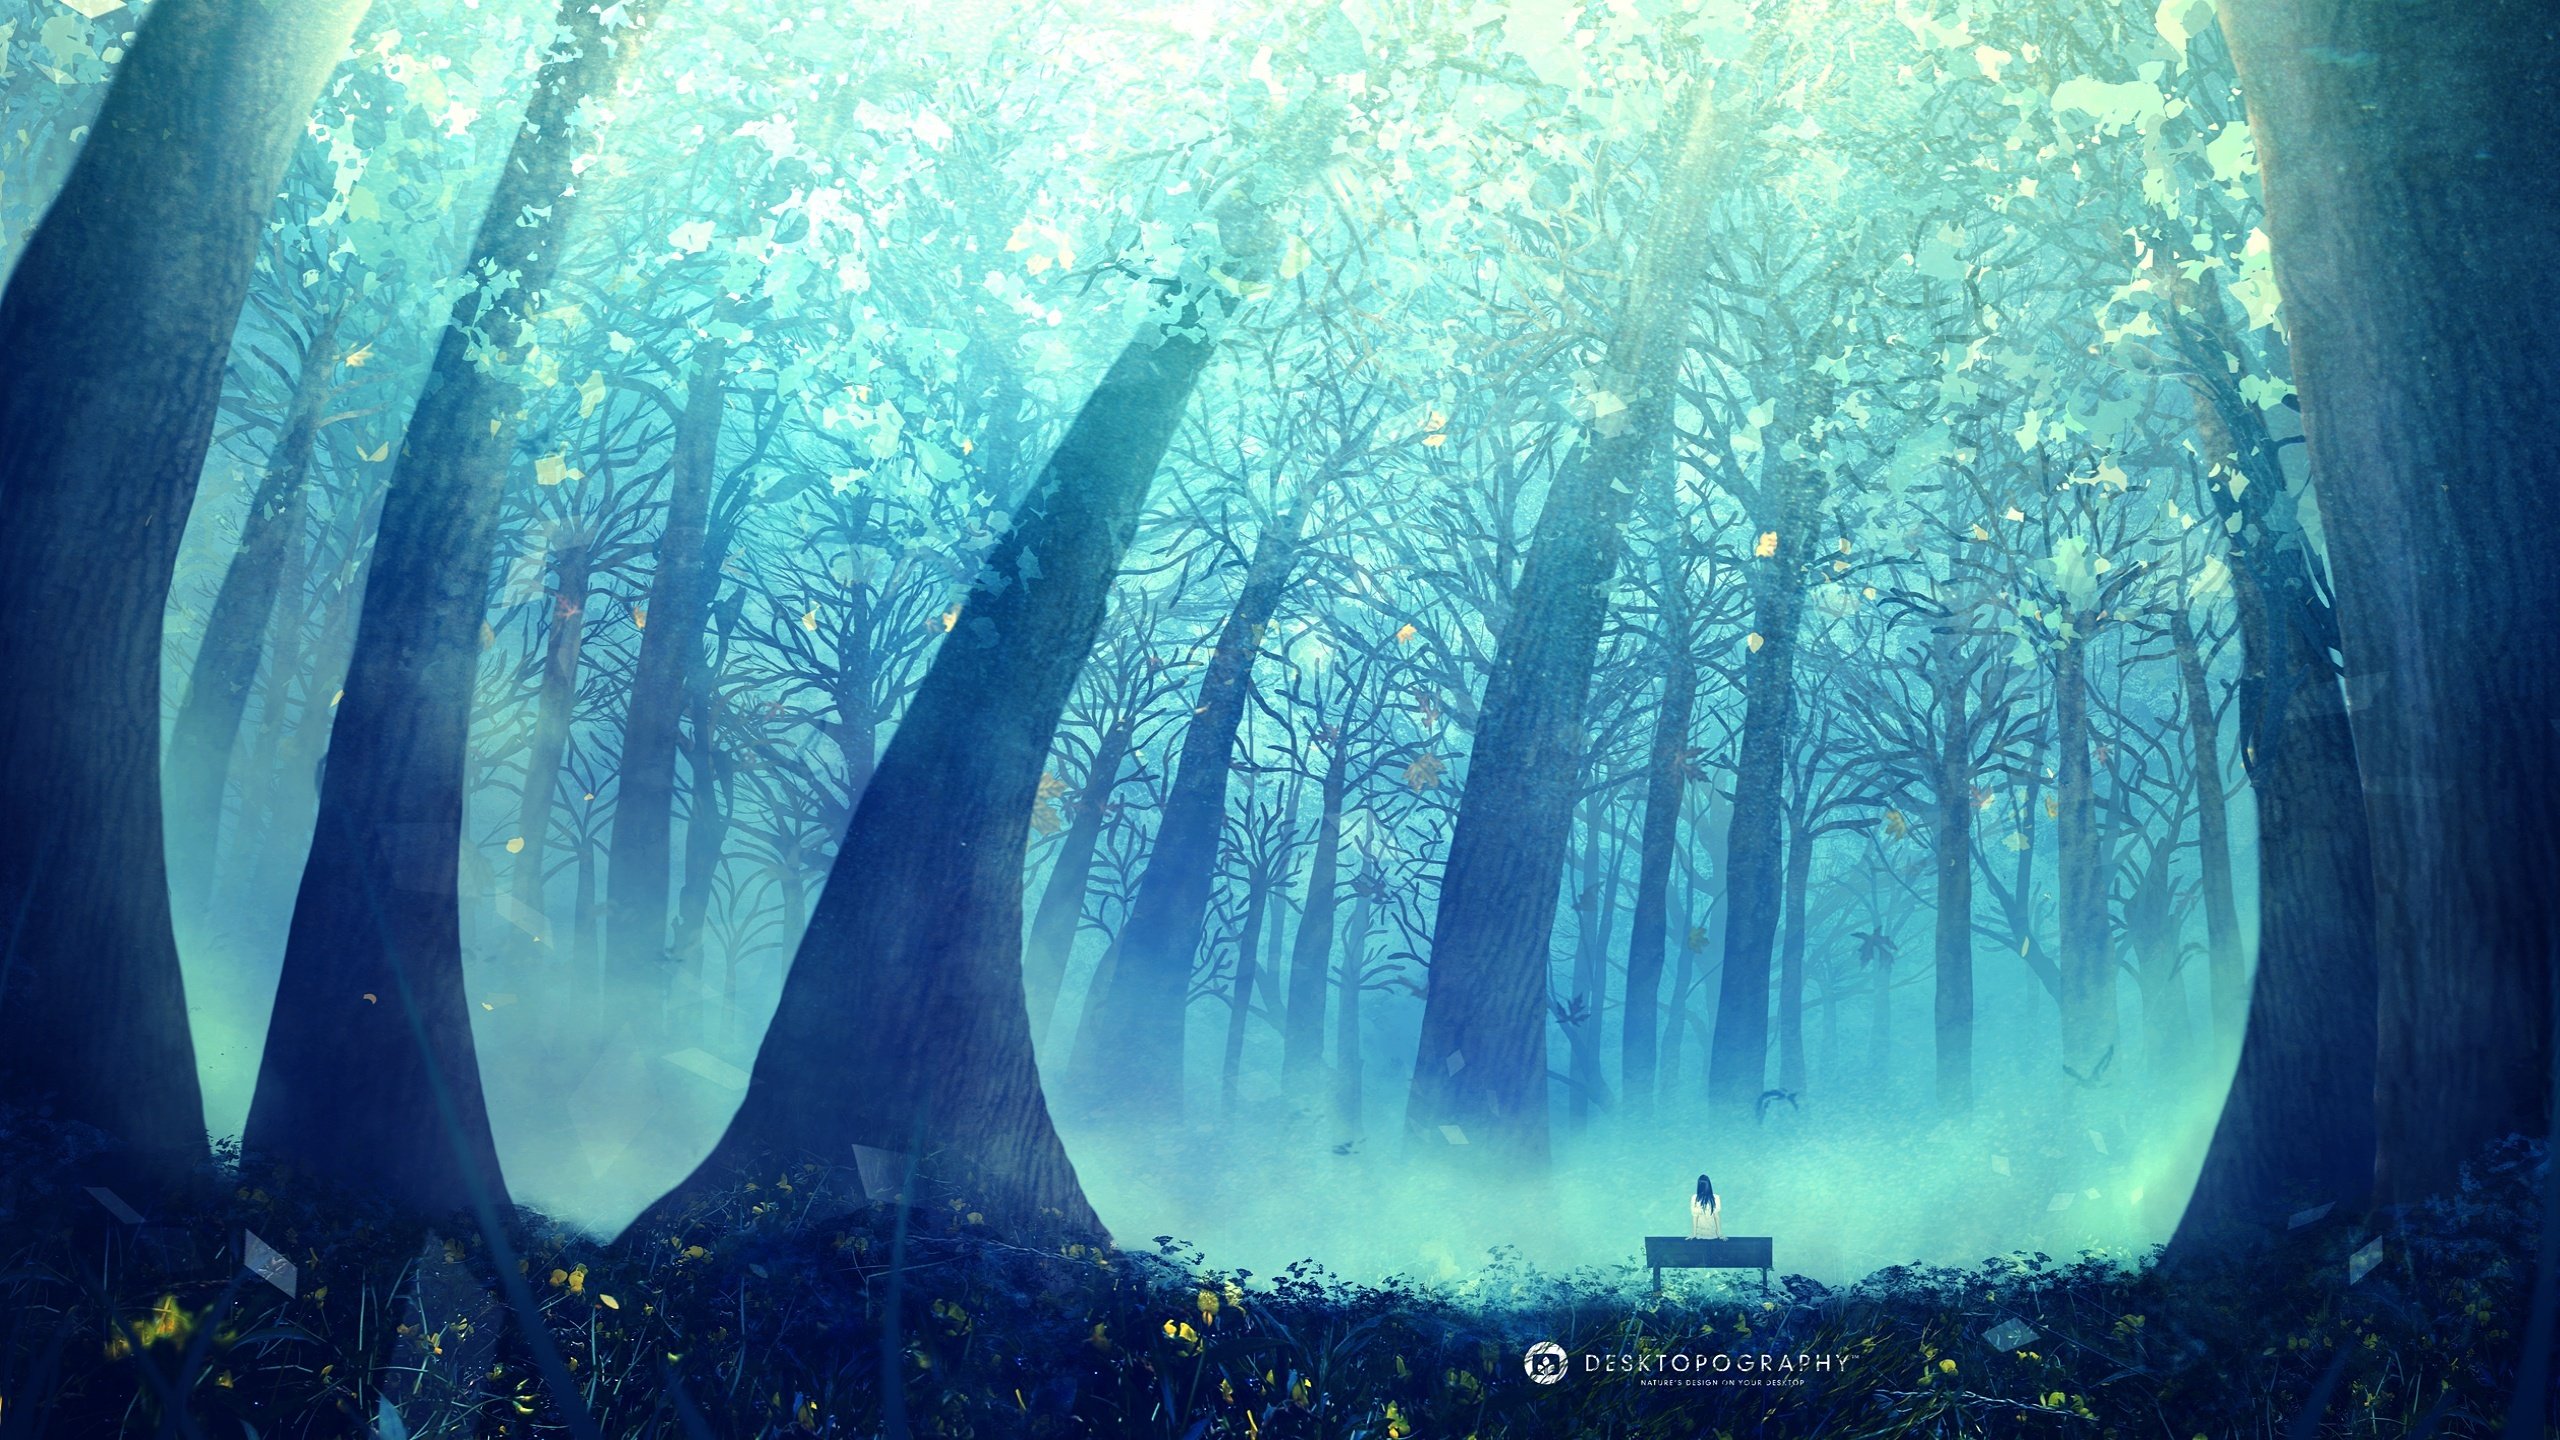 Anime tree forest beauty landscape blue beauty alone girl wallpaperx1440